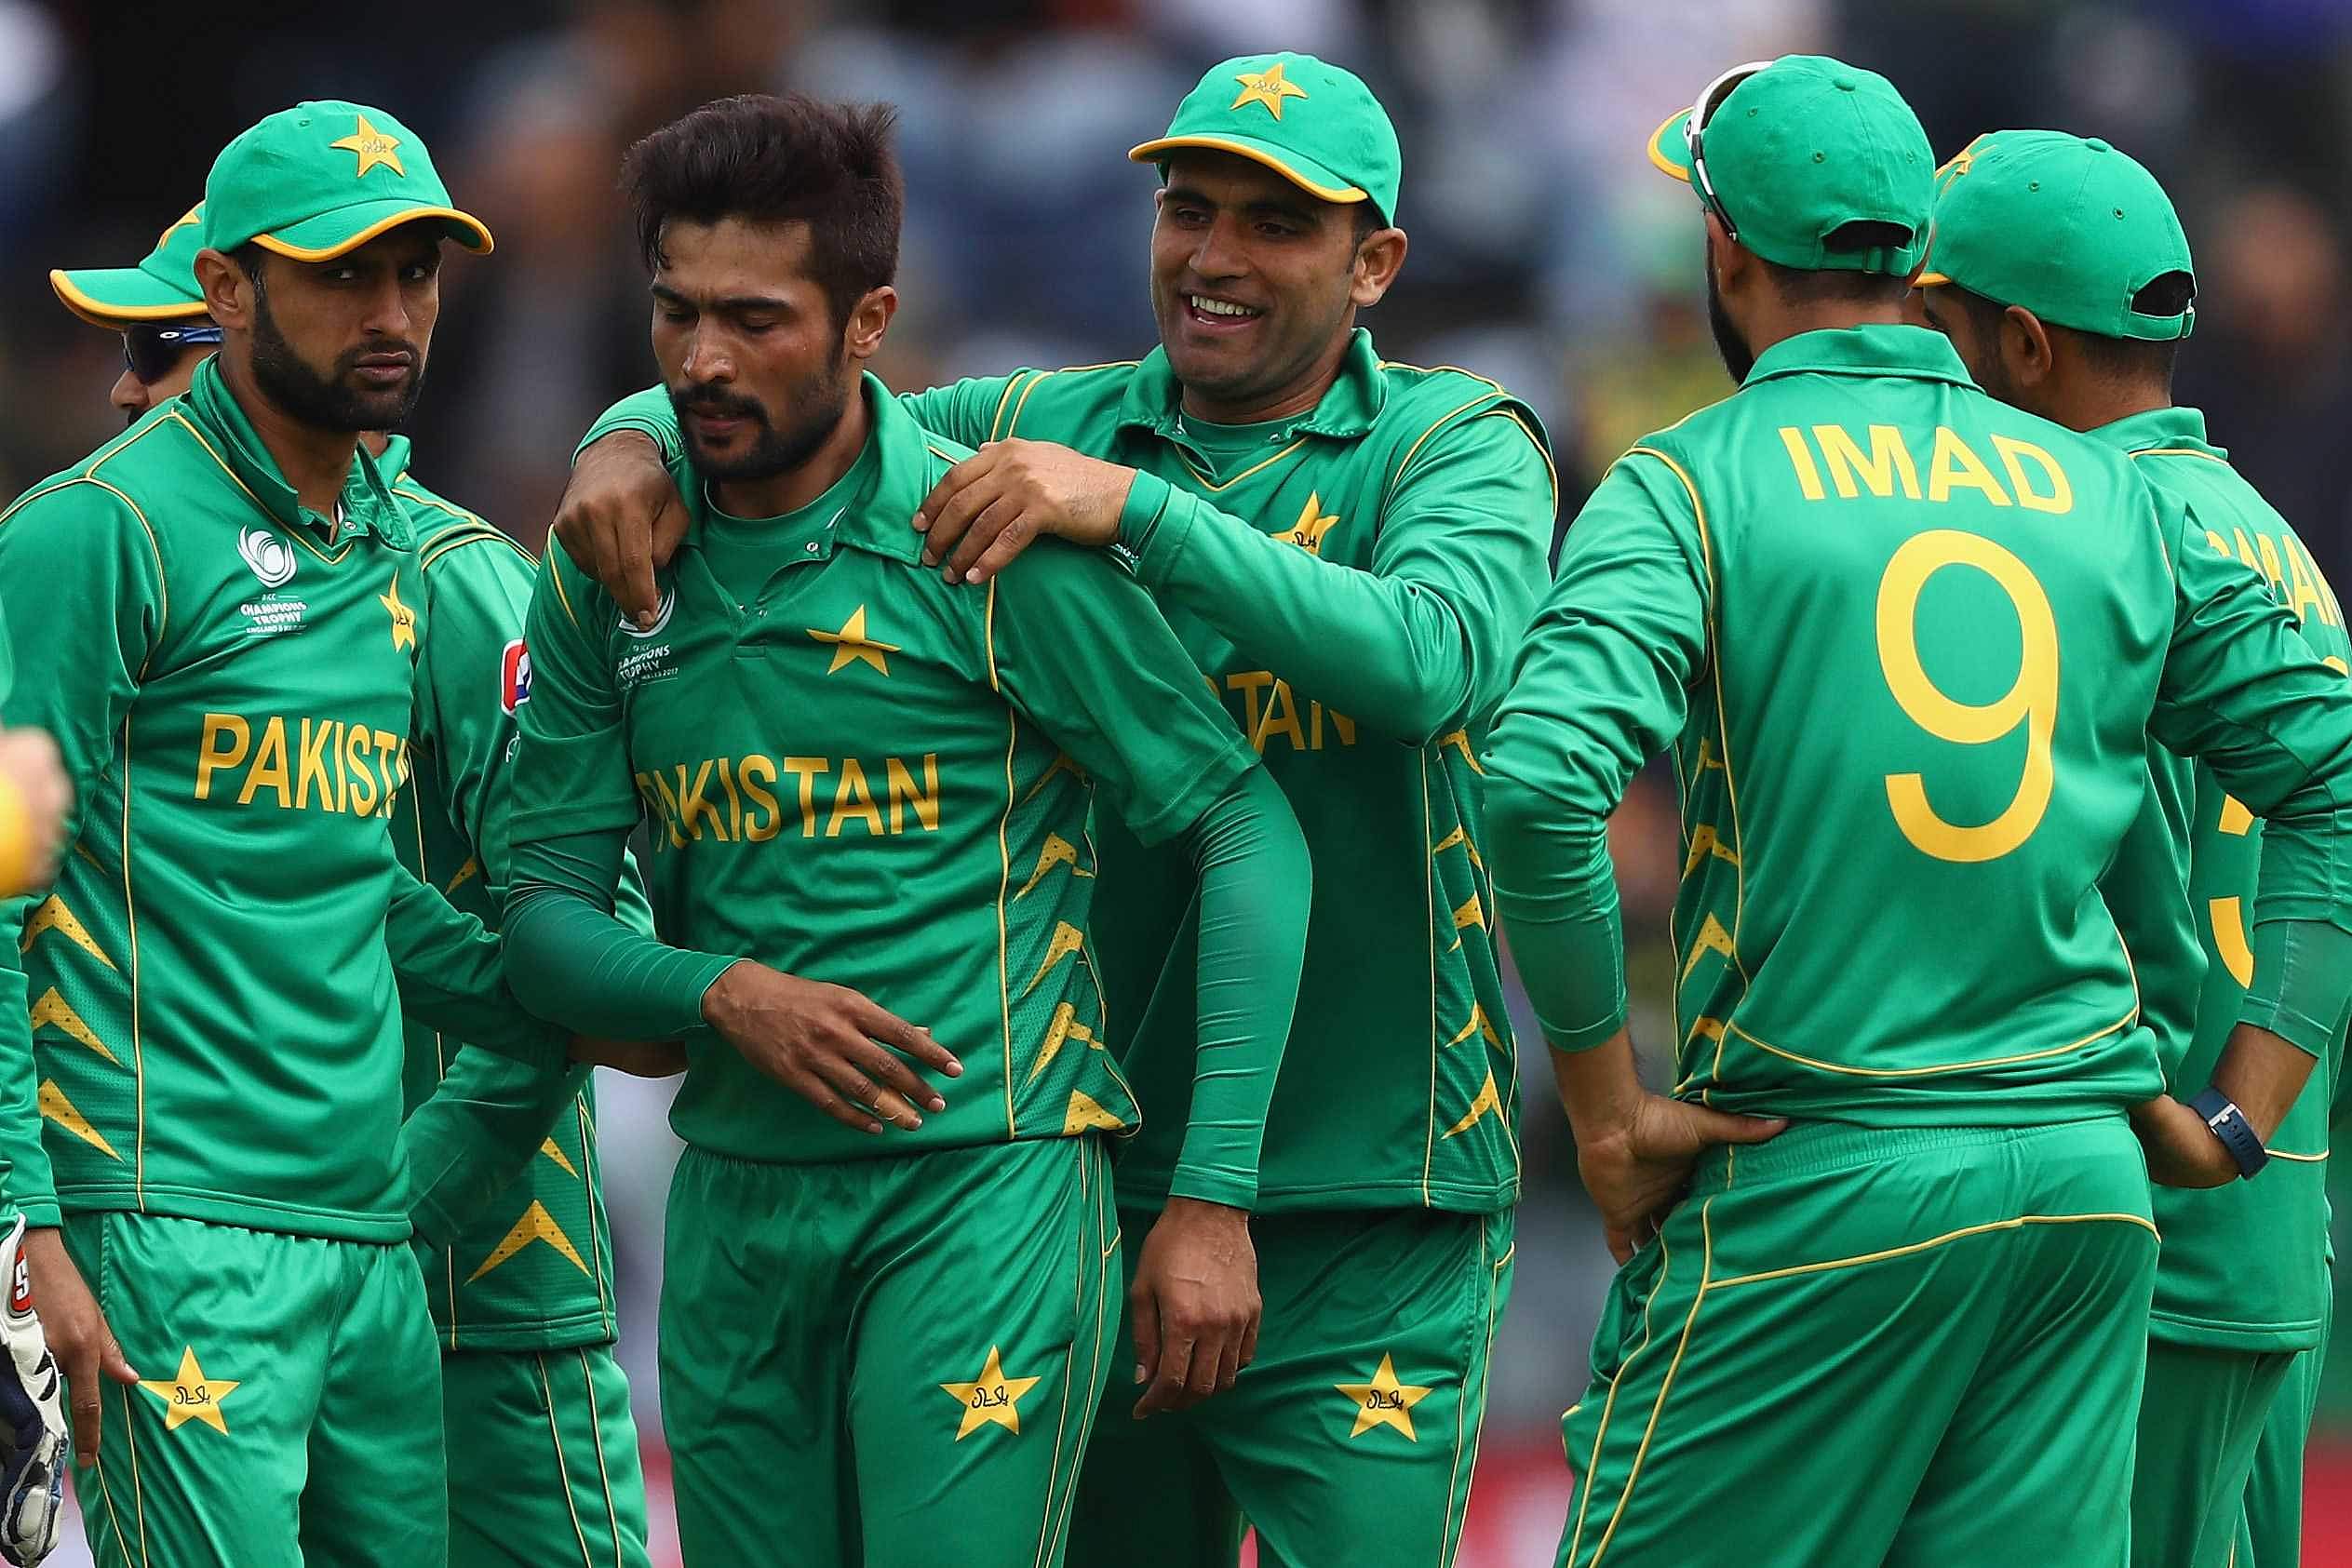 प्लान लीक: फाइनल से रोहित शर्मा, शिखर धवन और विराट कोहली को आउट करने का पाकिस्तान का टीम प्लान हुआ लीक 1